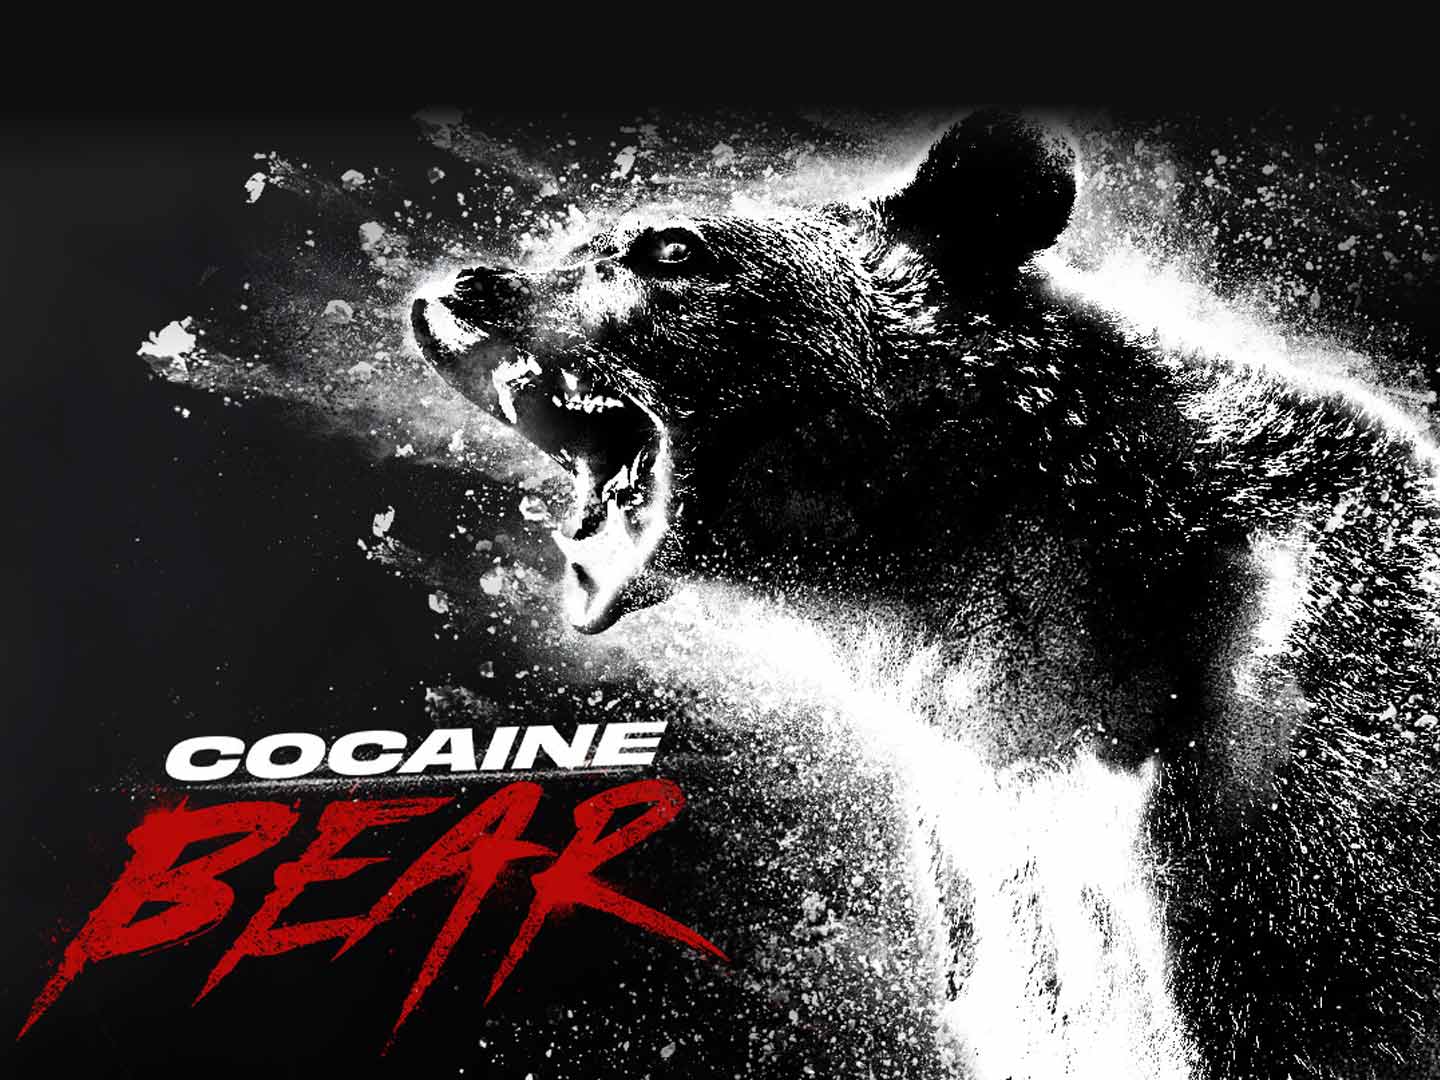 Sunday Cinema Presents: Cocaine Bear